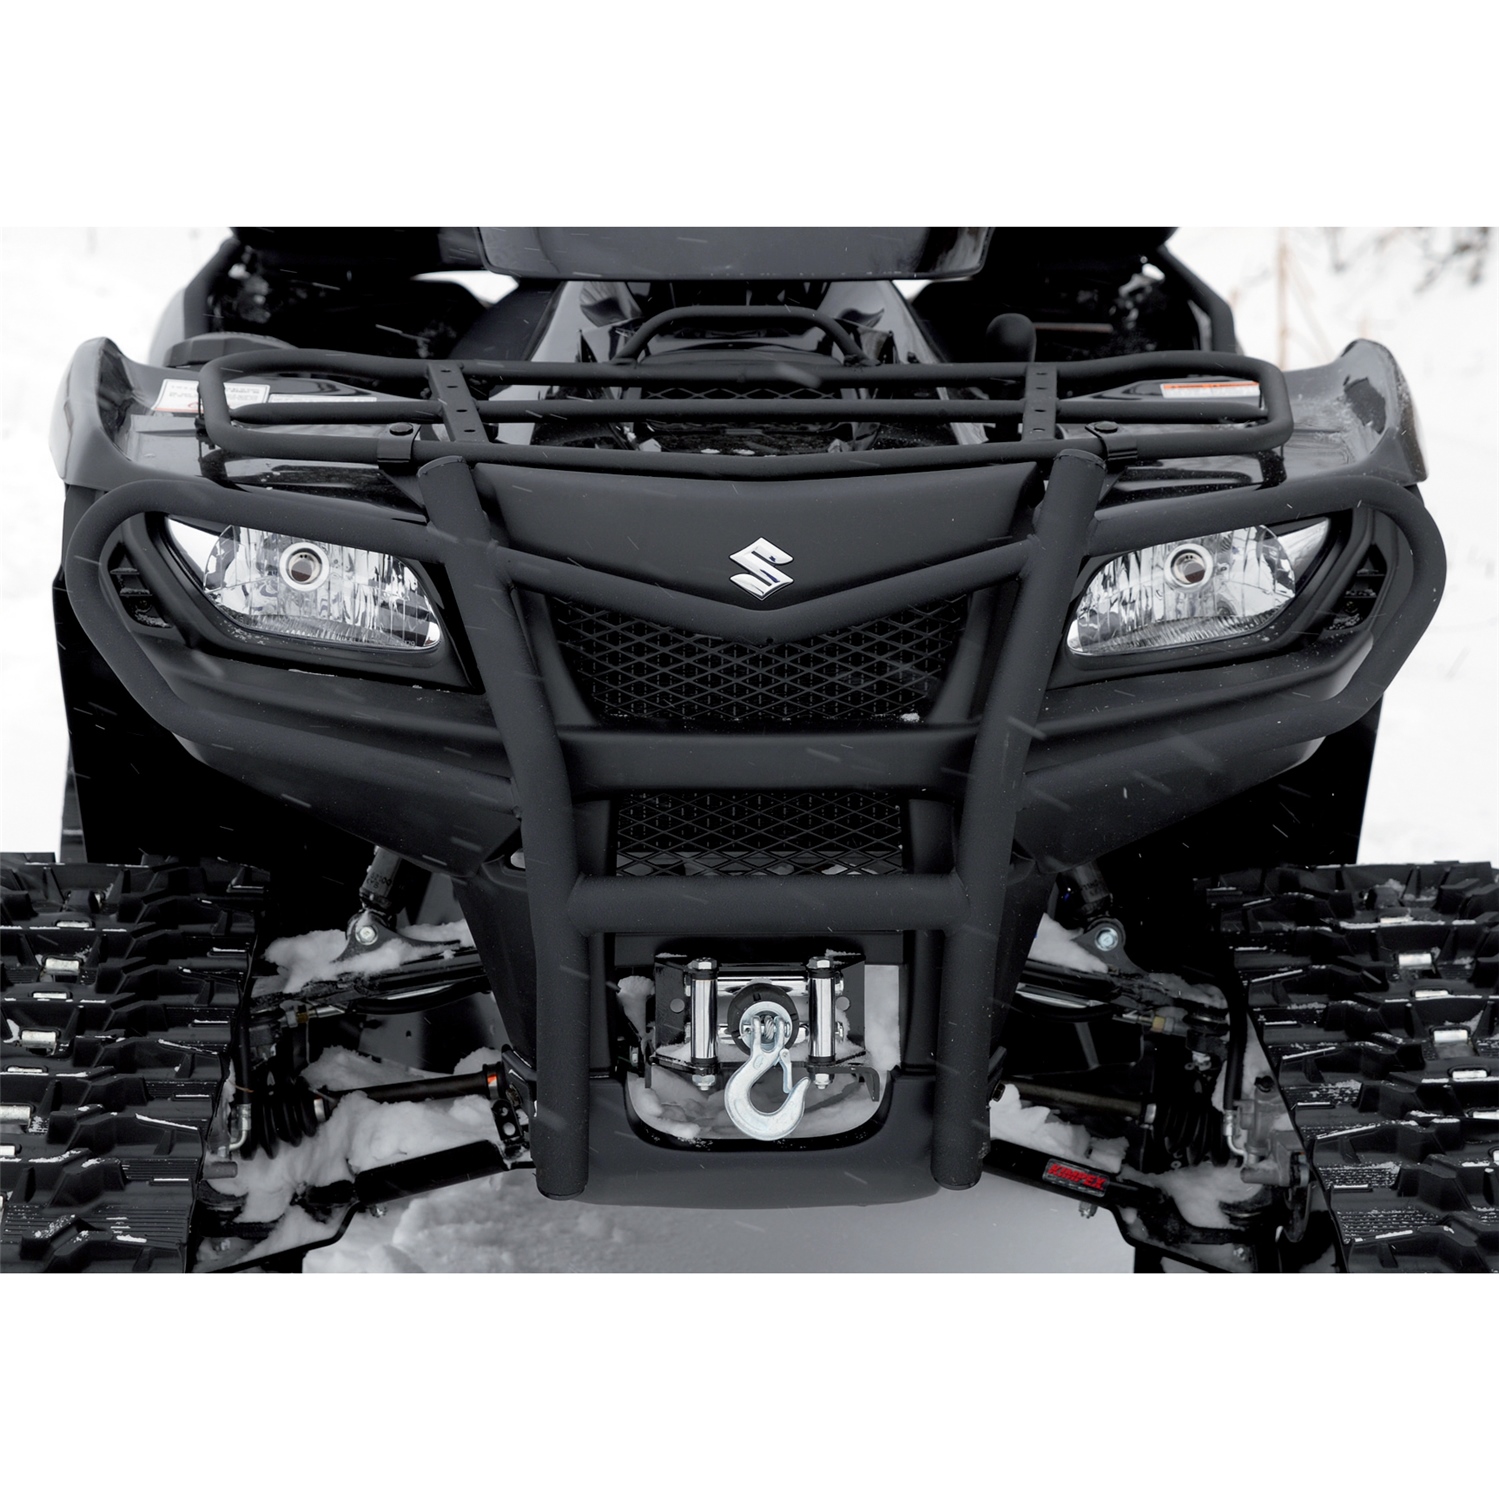 SUZUKI KING QUAD 500 750 FRONT BUMPER ATV KIMPEX POWDER COATED 2014-18 